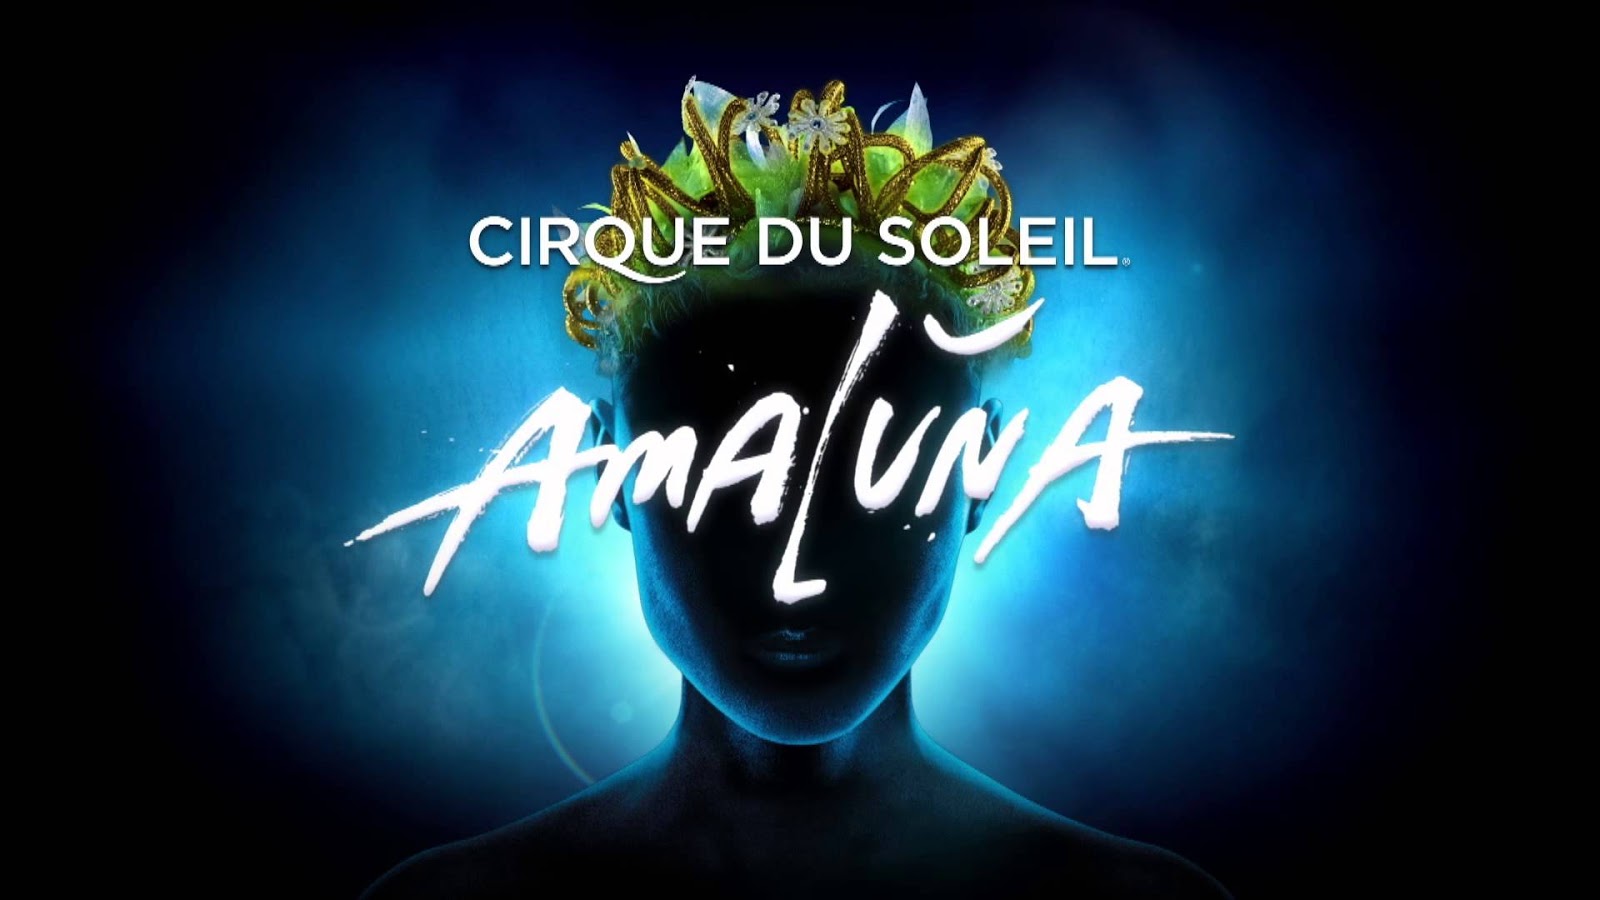 Malcolm S Show Cirque Du Soleil Amaluna